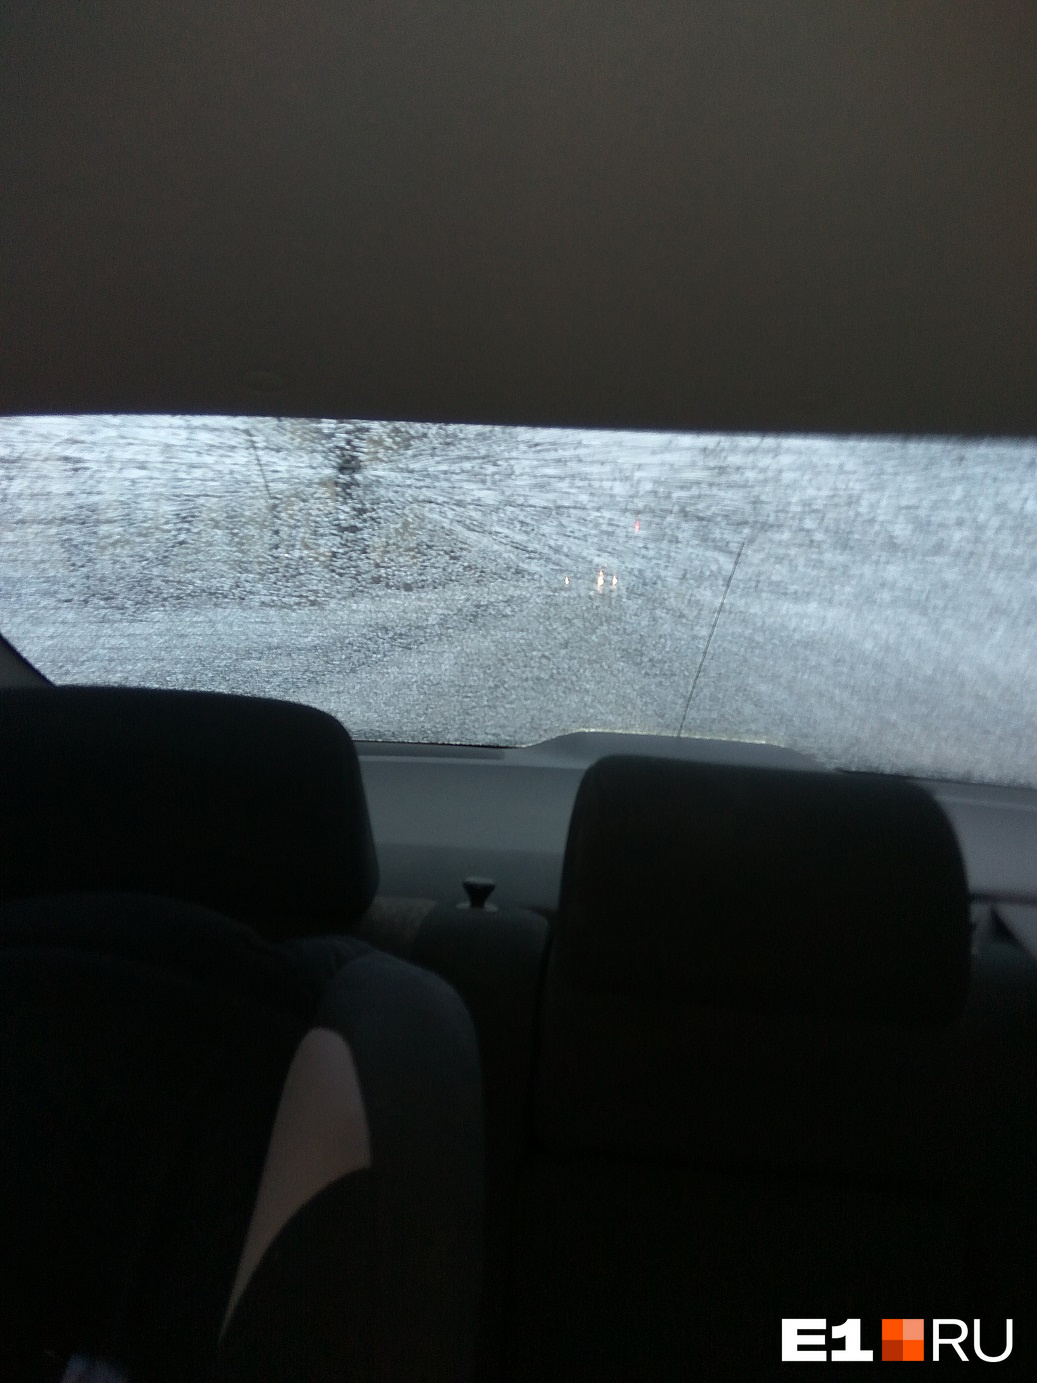 Разбитое пулей стекло на машине Константина, которую обстреляли в декабре